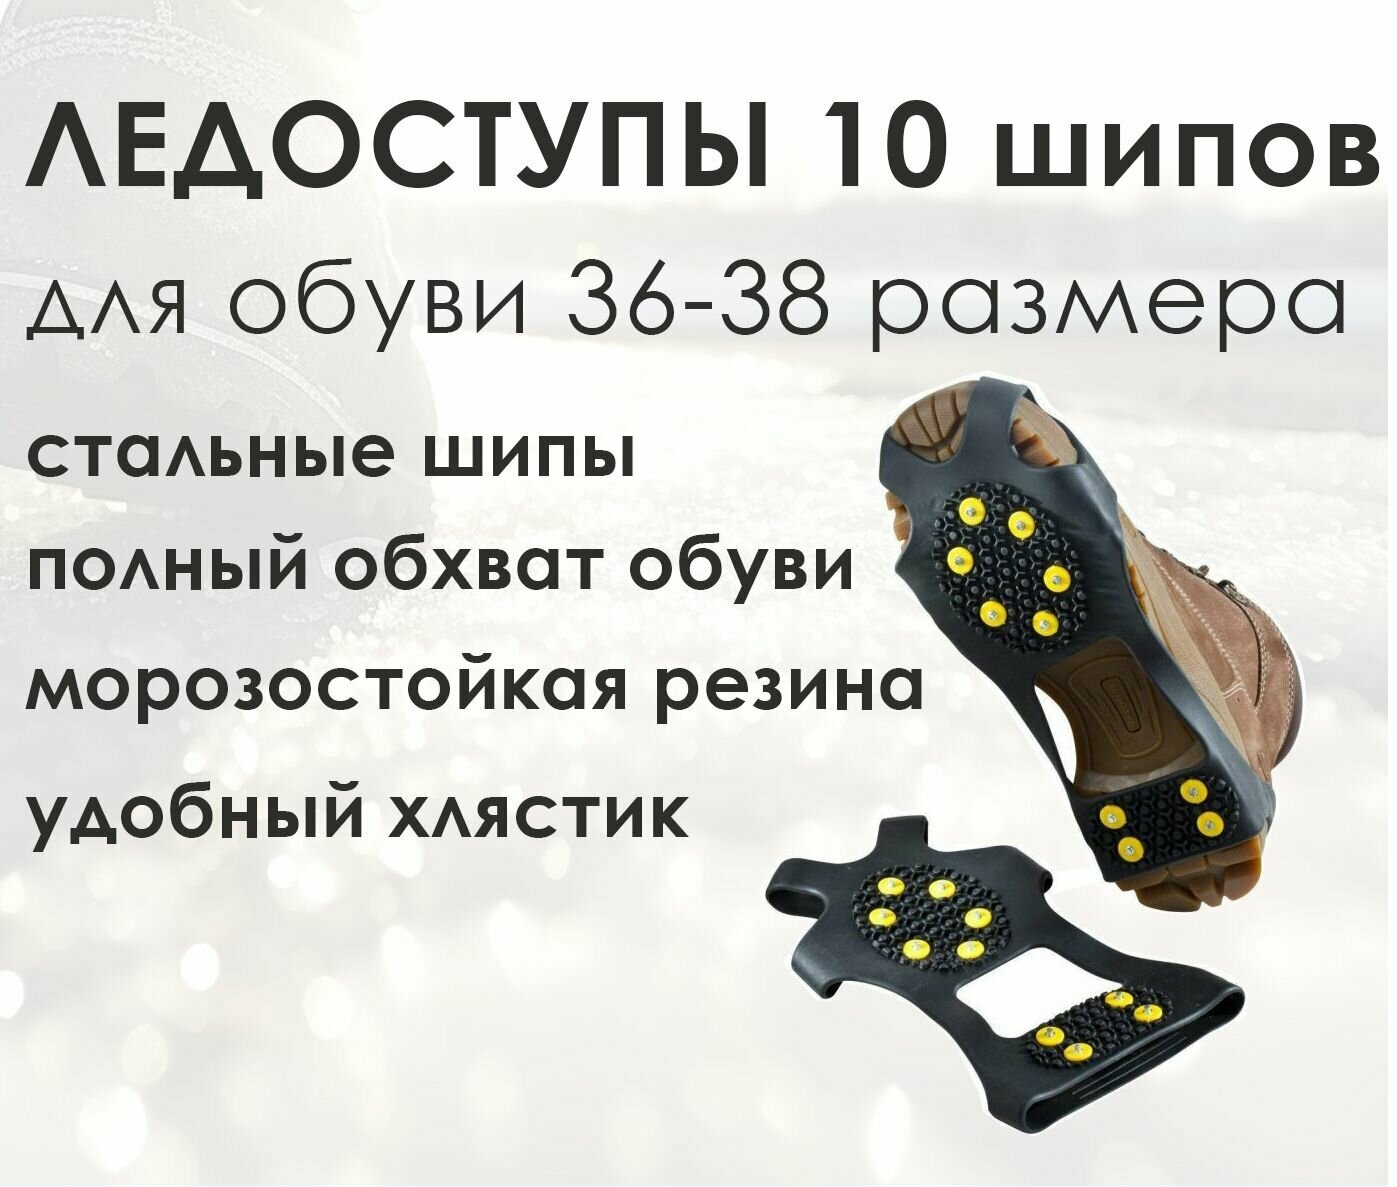 Ледоходы на обувь 10 шипов M (36-38) / Ледоступы на обувь 10 шипов M (36-38) / ледоходы на обувь резиновые M (36-38)